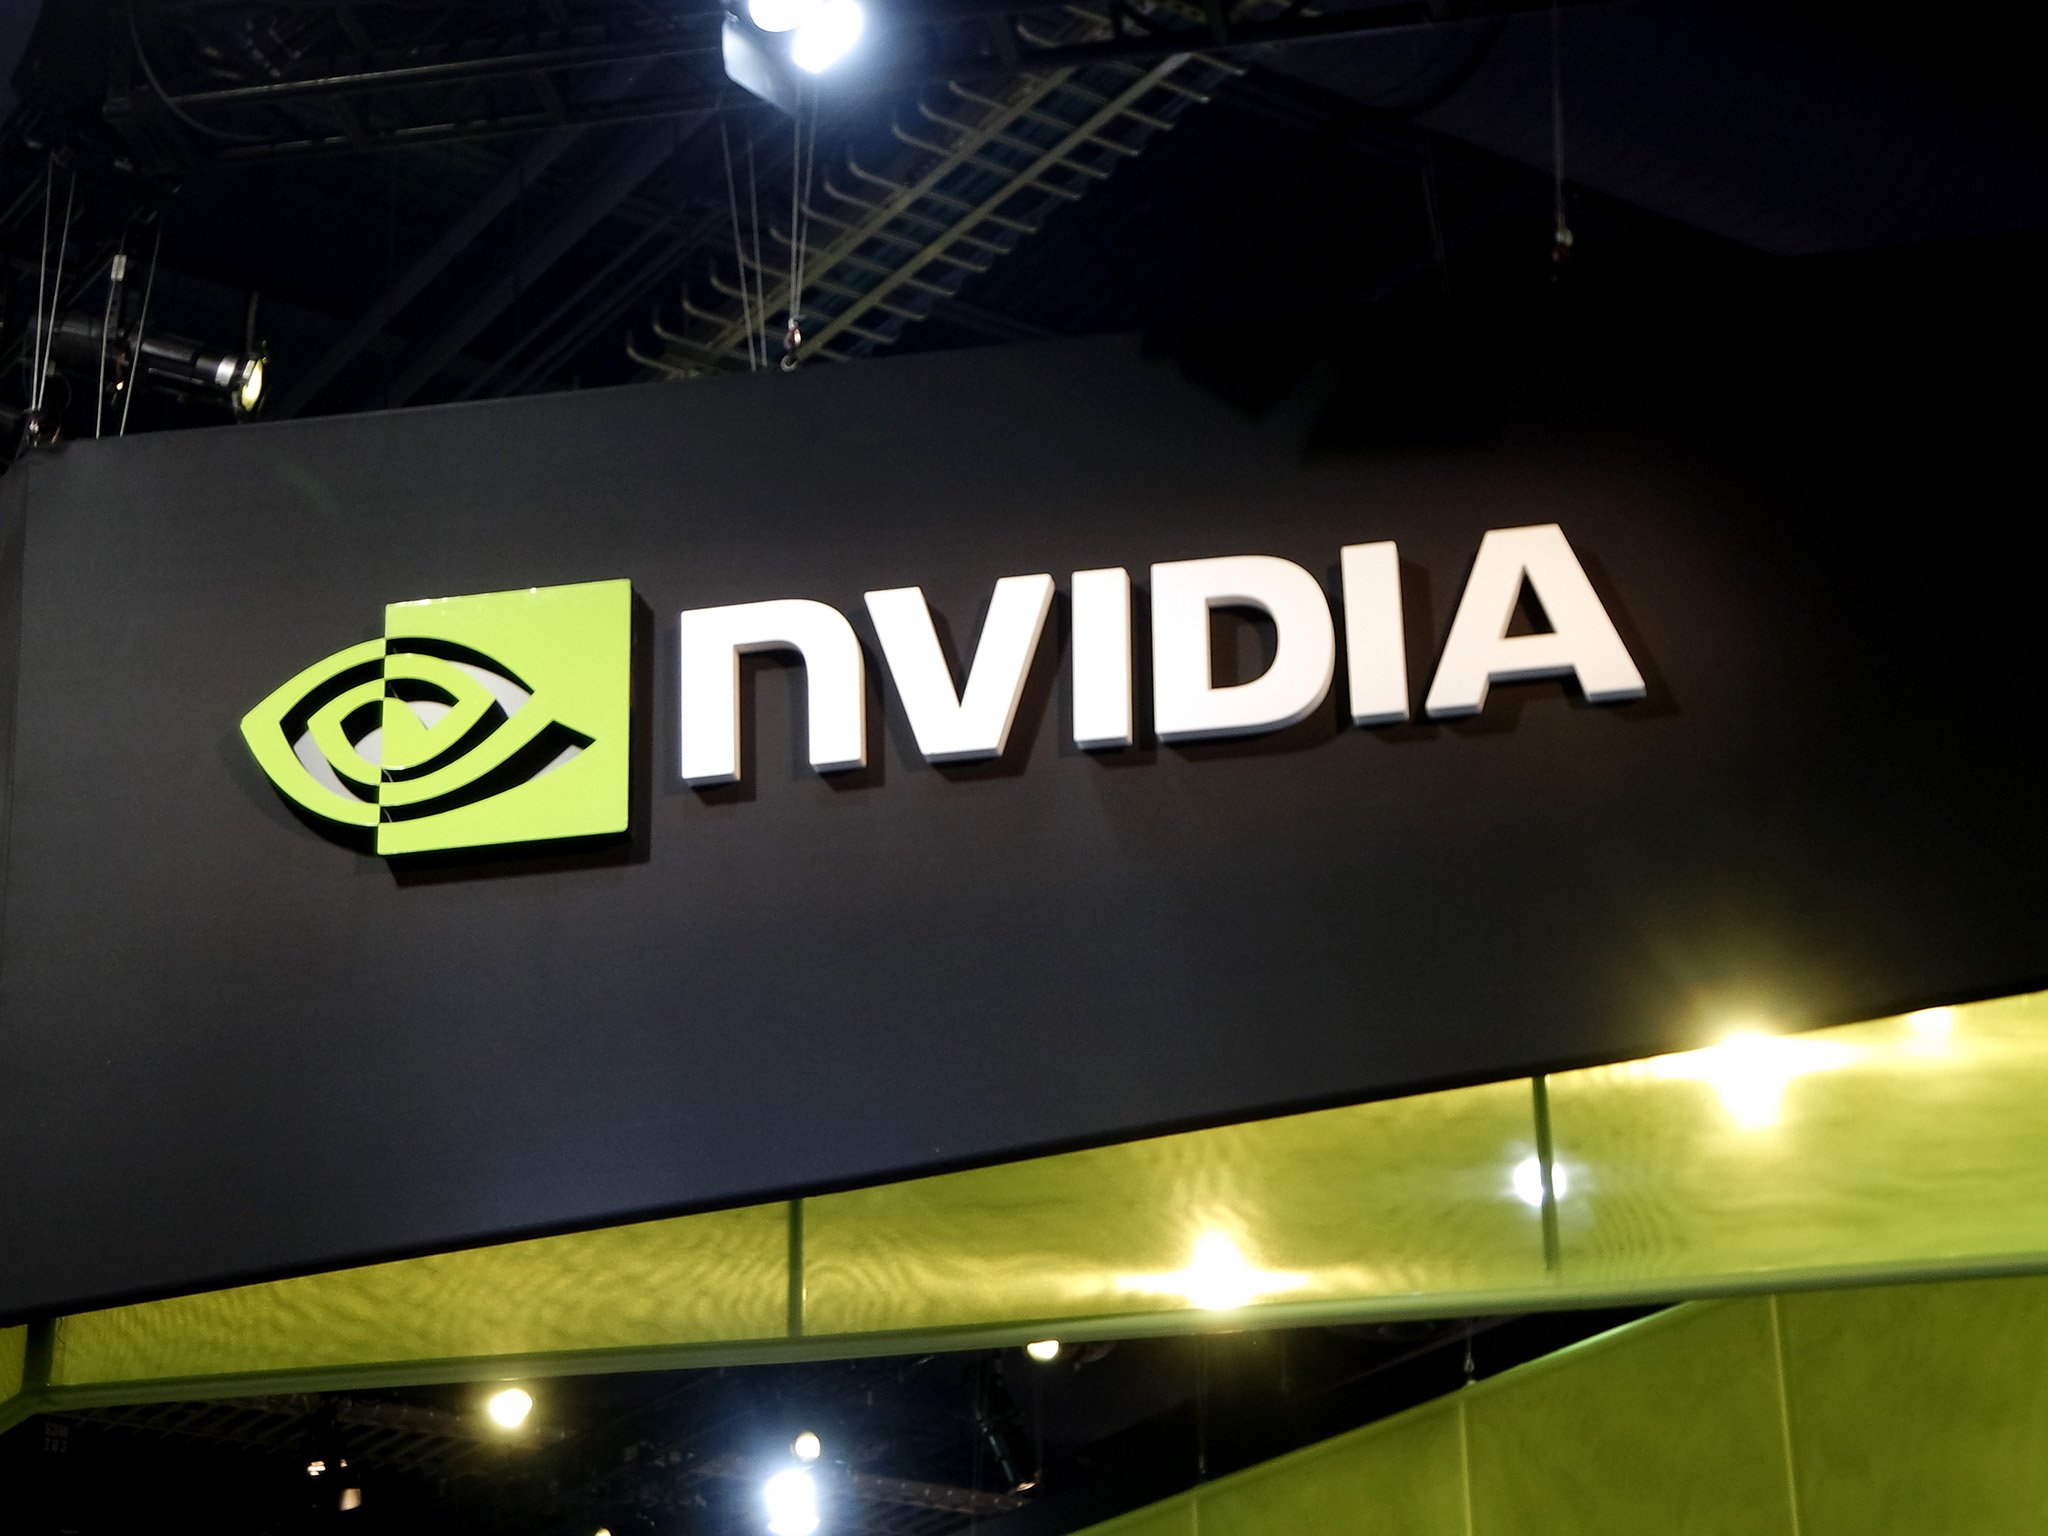 nvidia-banner-logo.jpg